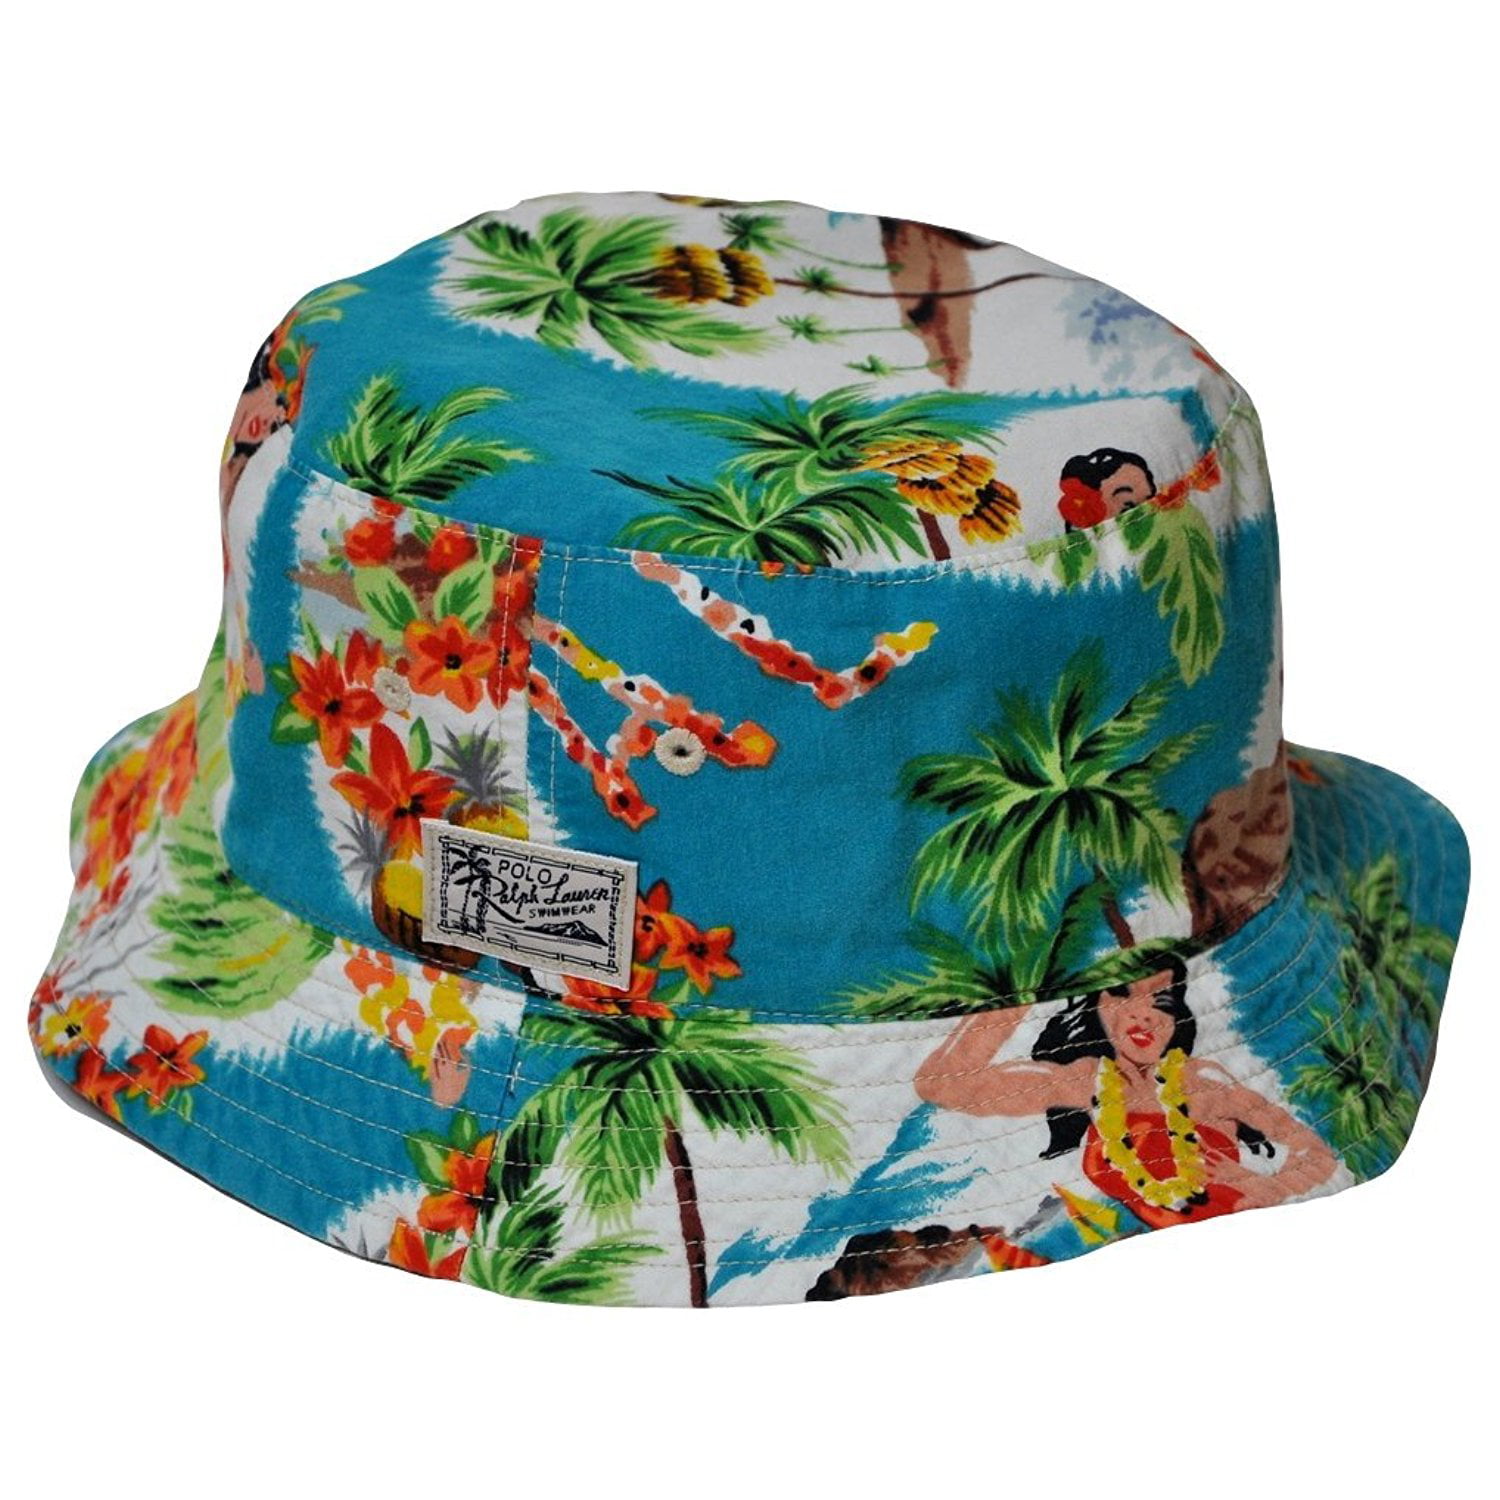 Polo Ralph Lauren Men's Reversible Bucket Hat-Turquoise - Walmart.com